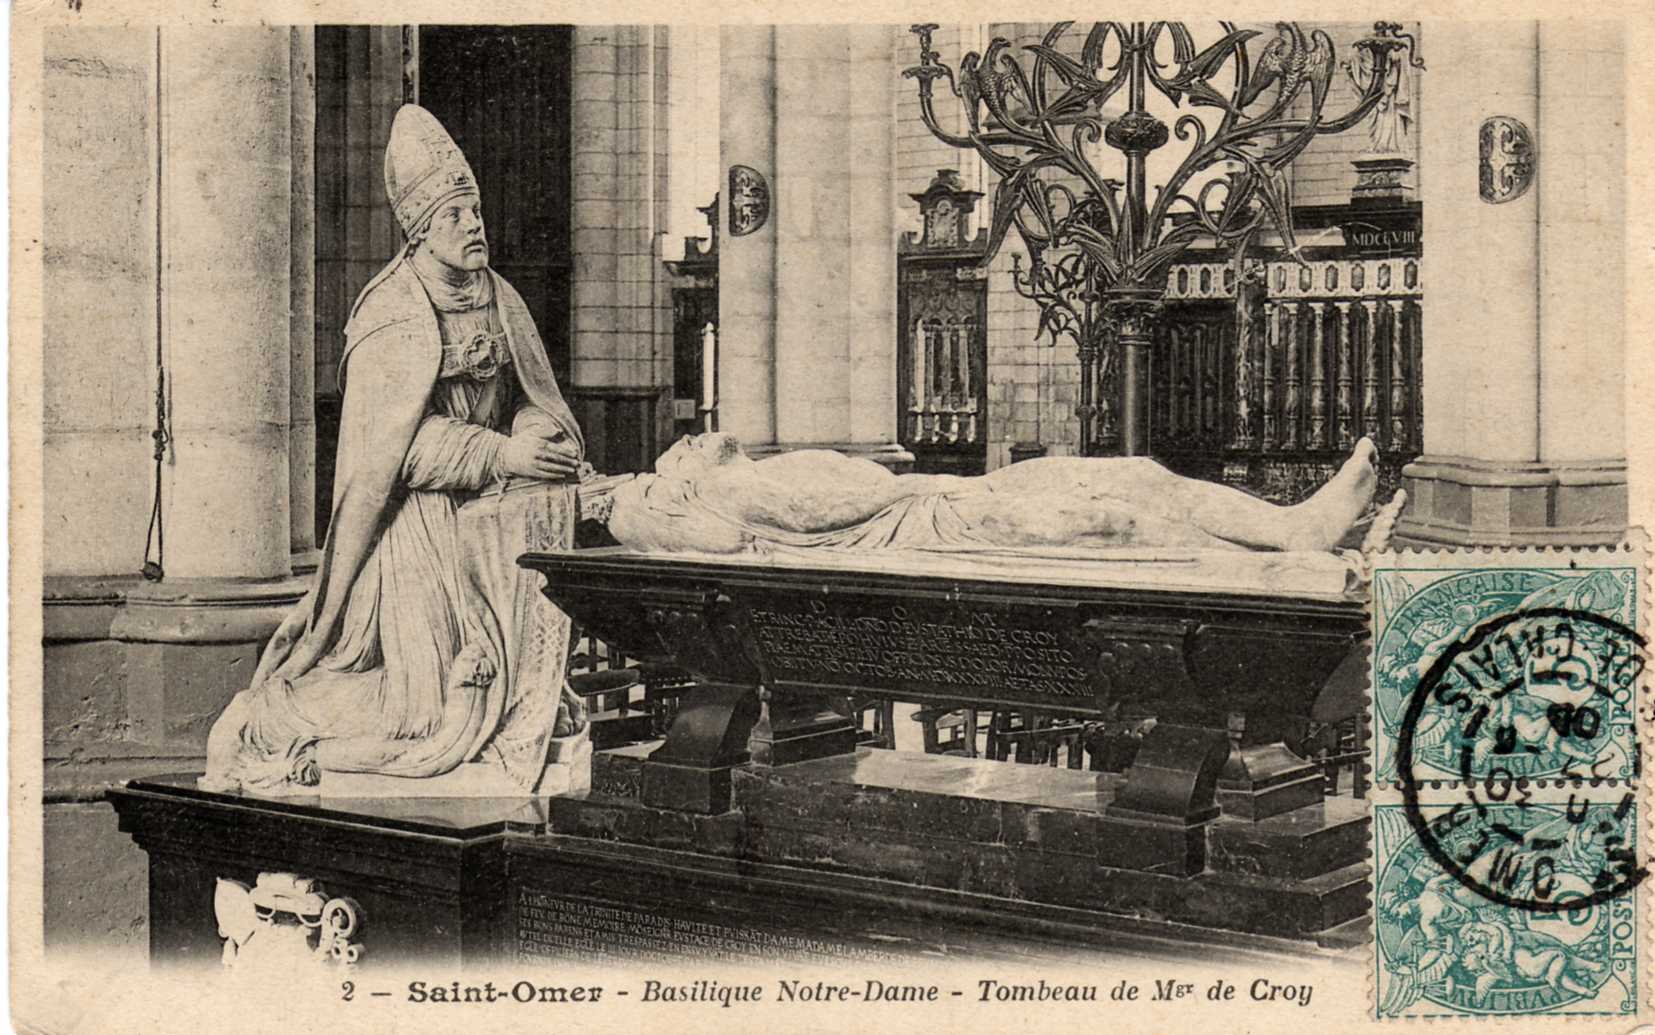 Le Mausolée d'Eustache de Croy décédé en 1528 Evêque d'Arras. Il est représenté agenouillé en habits pontificaux. Cette sculpture a été réalisée par Jacques du Broeucq .